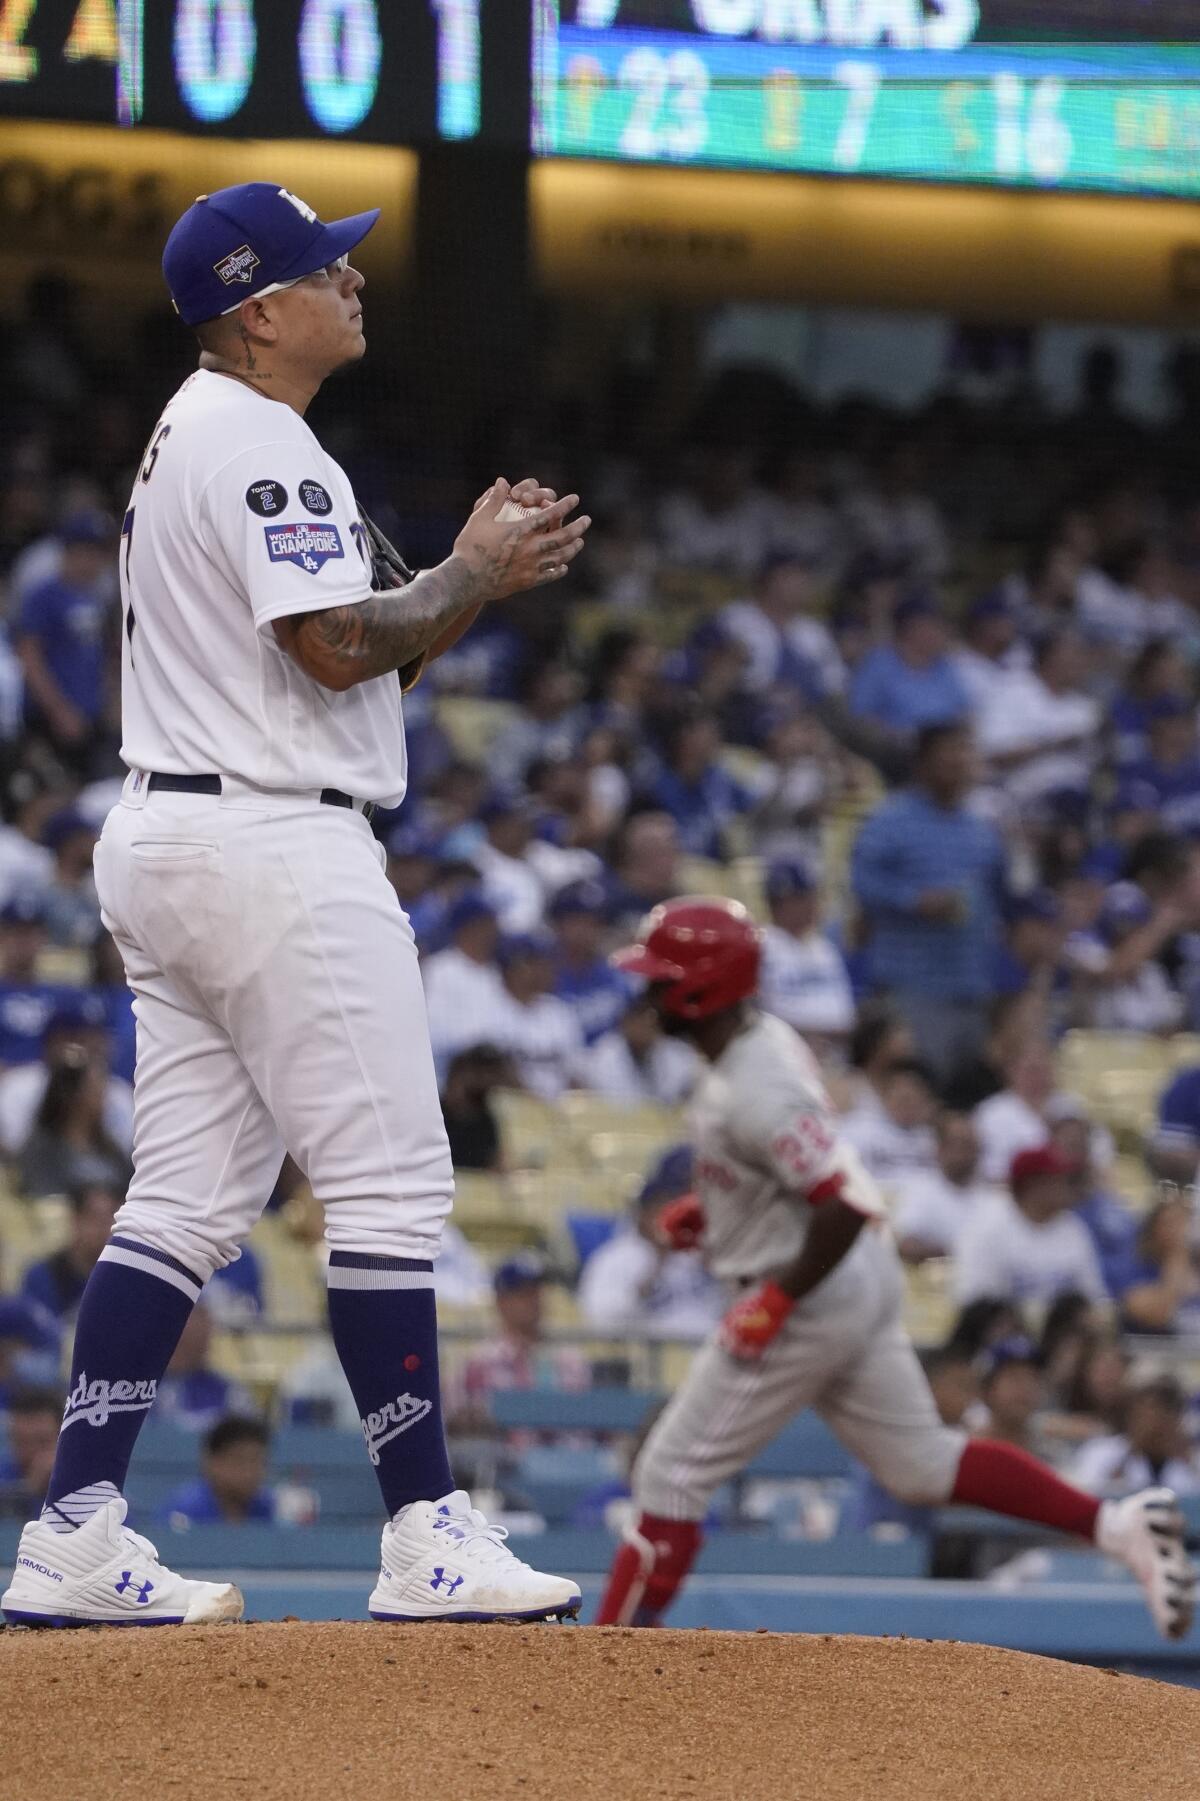 Julio Urías stands on the baseball mound